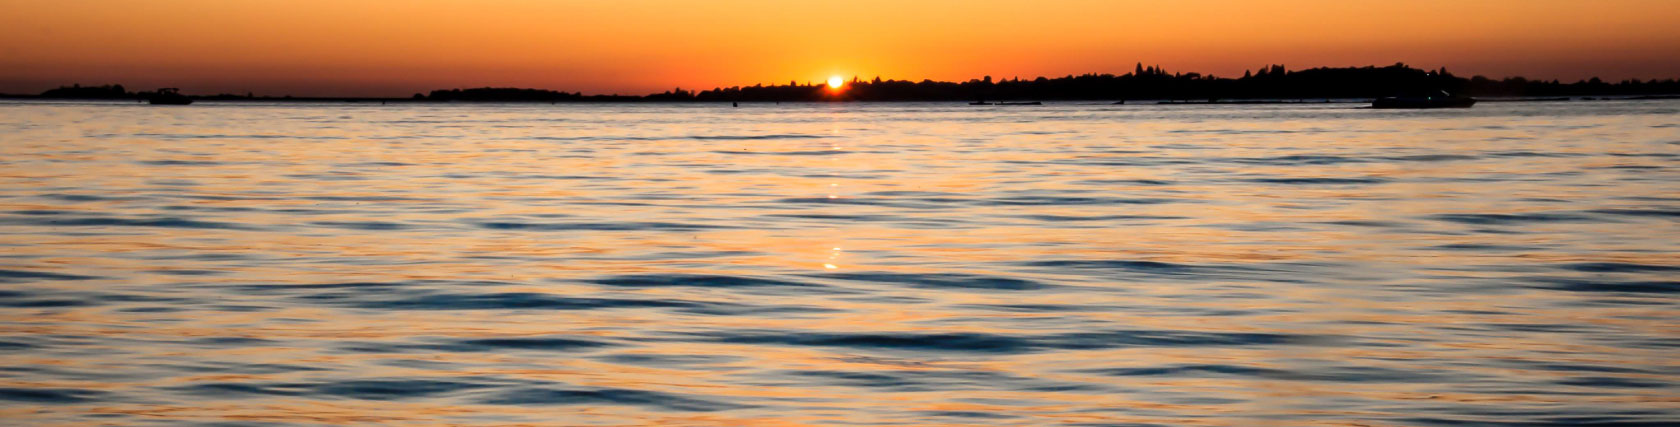 Folsom Lake Marina during the sunset